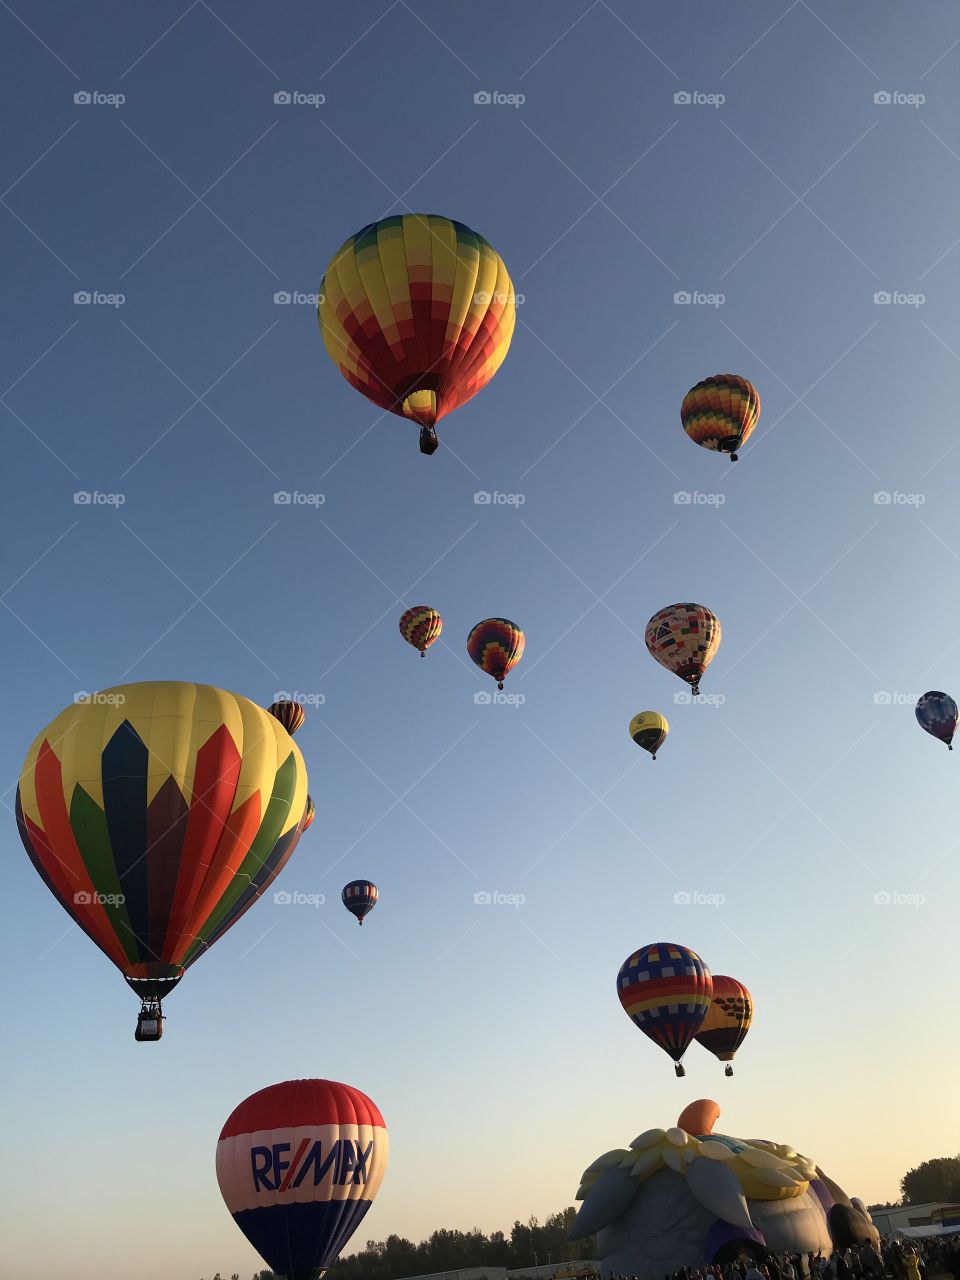 Fall hot air balloon festival at sunrise